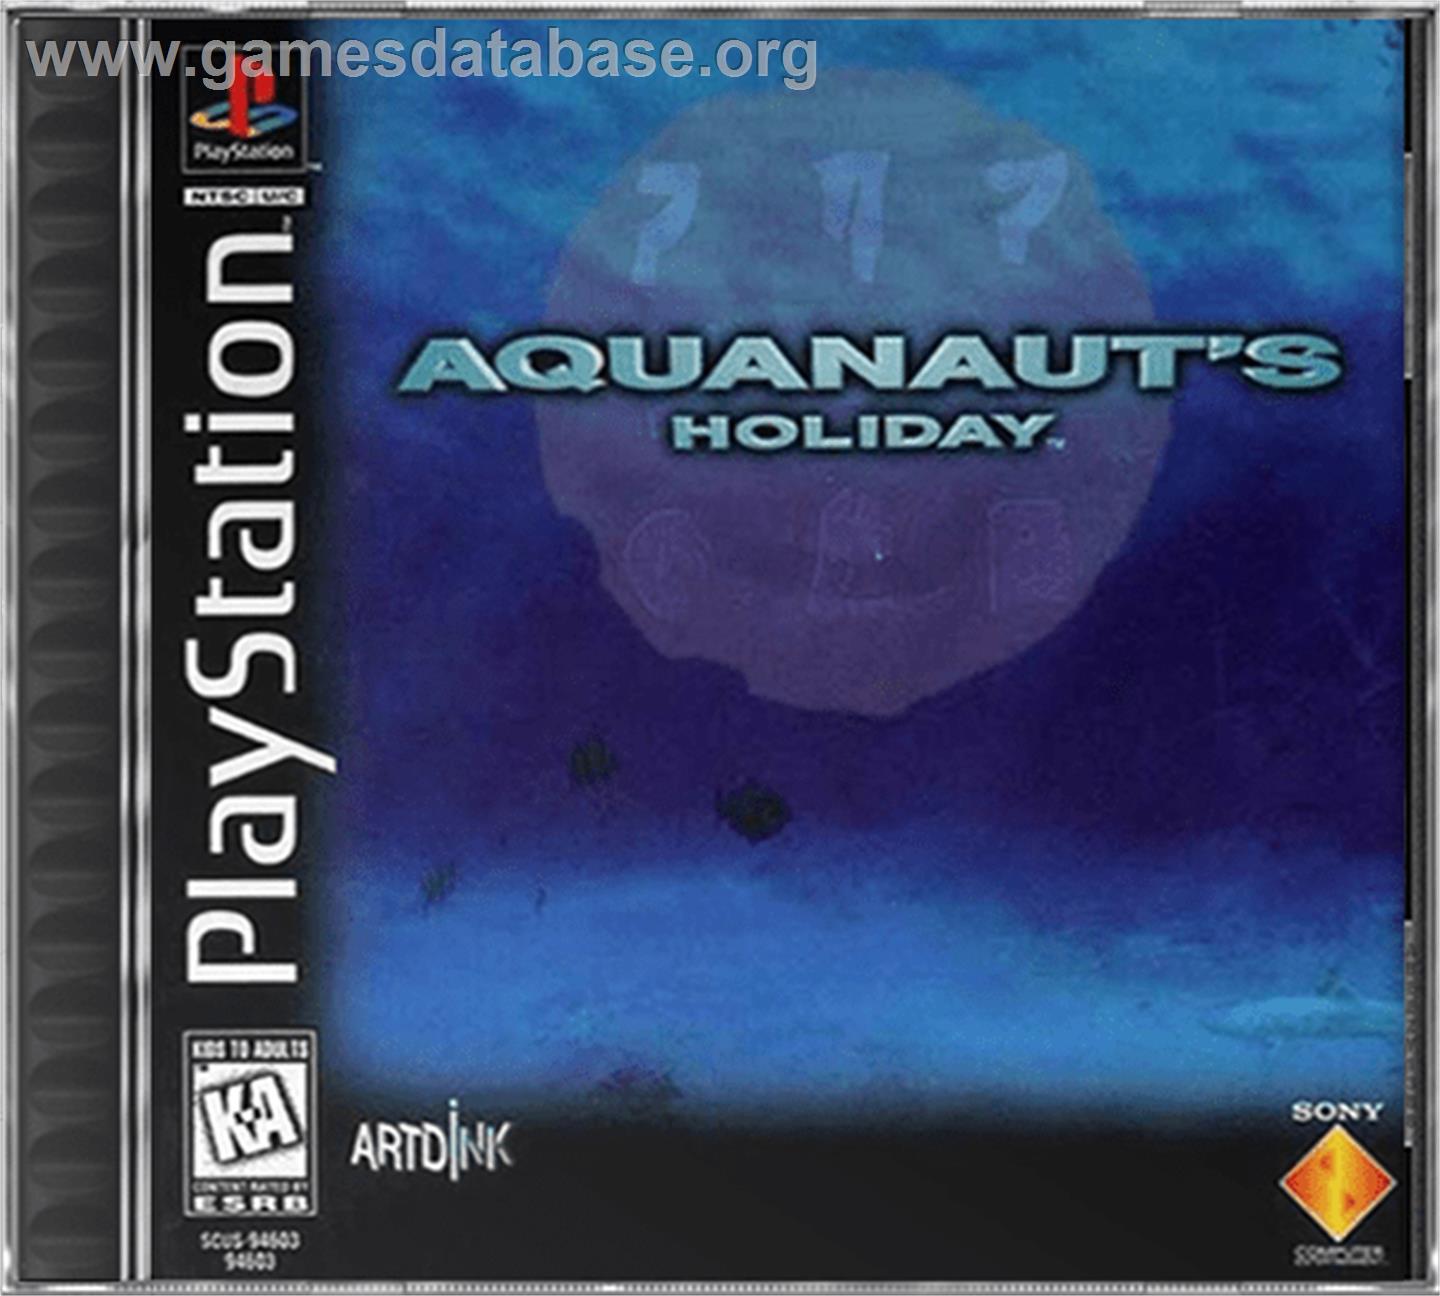 Aquanaut's Holiday - Sony Playstation - Artwork - Box